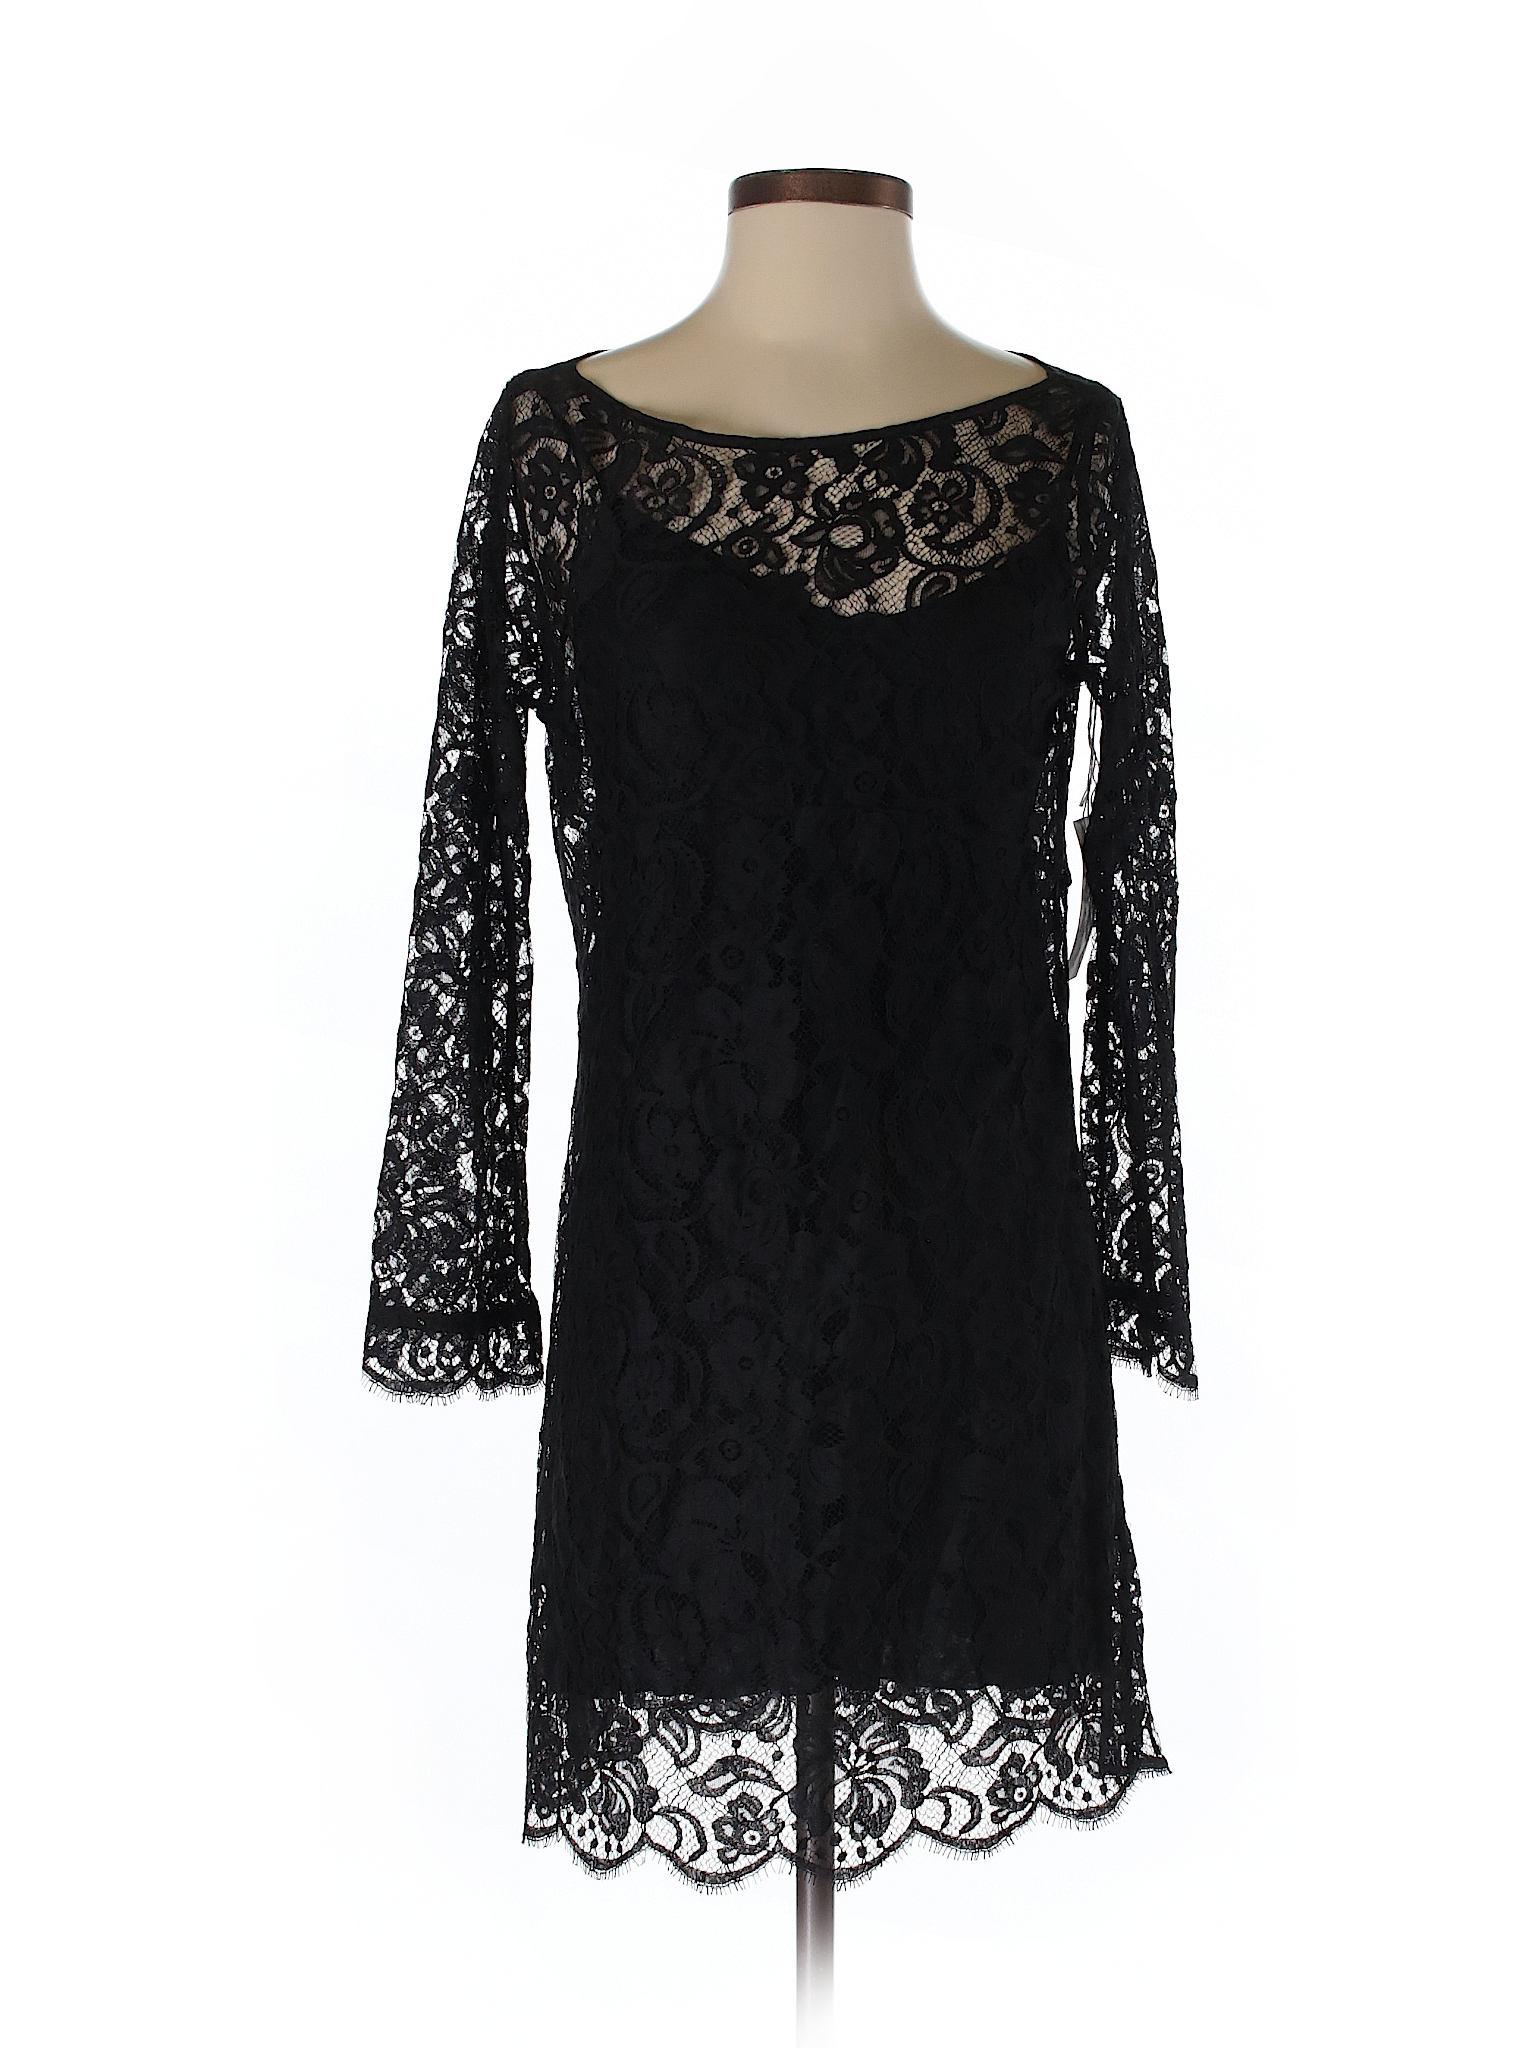 Velvet 100% Nylon Lace Black Cocktail Dress Size S - 79% off | thredUP